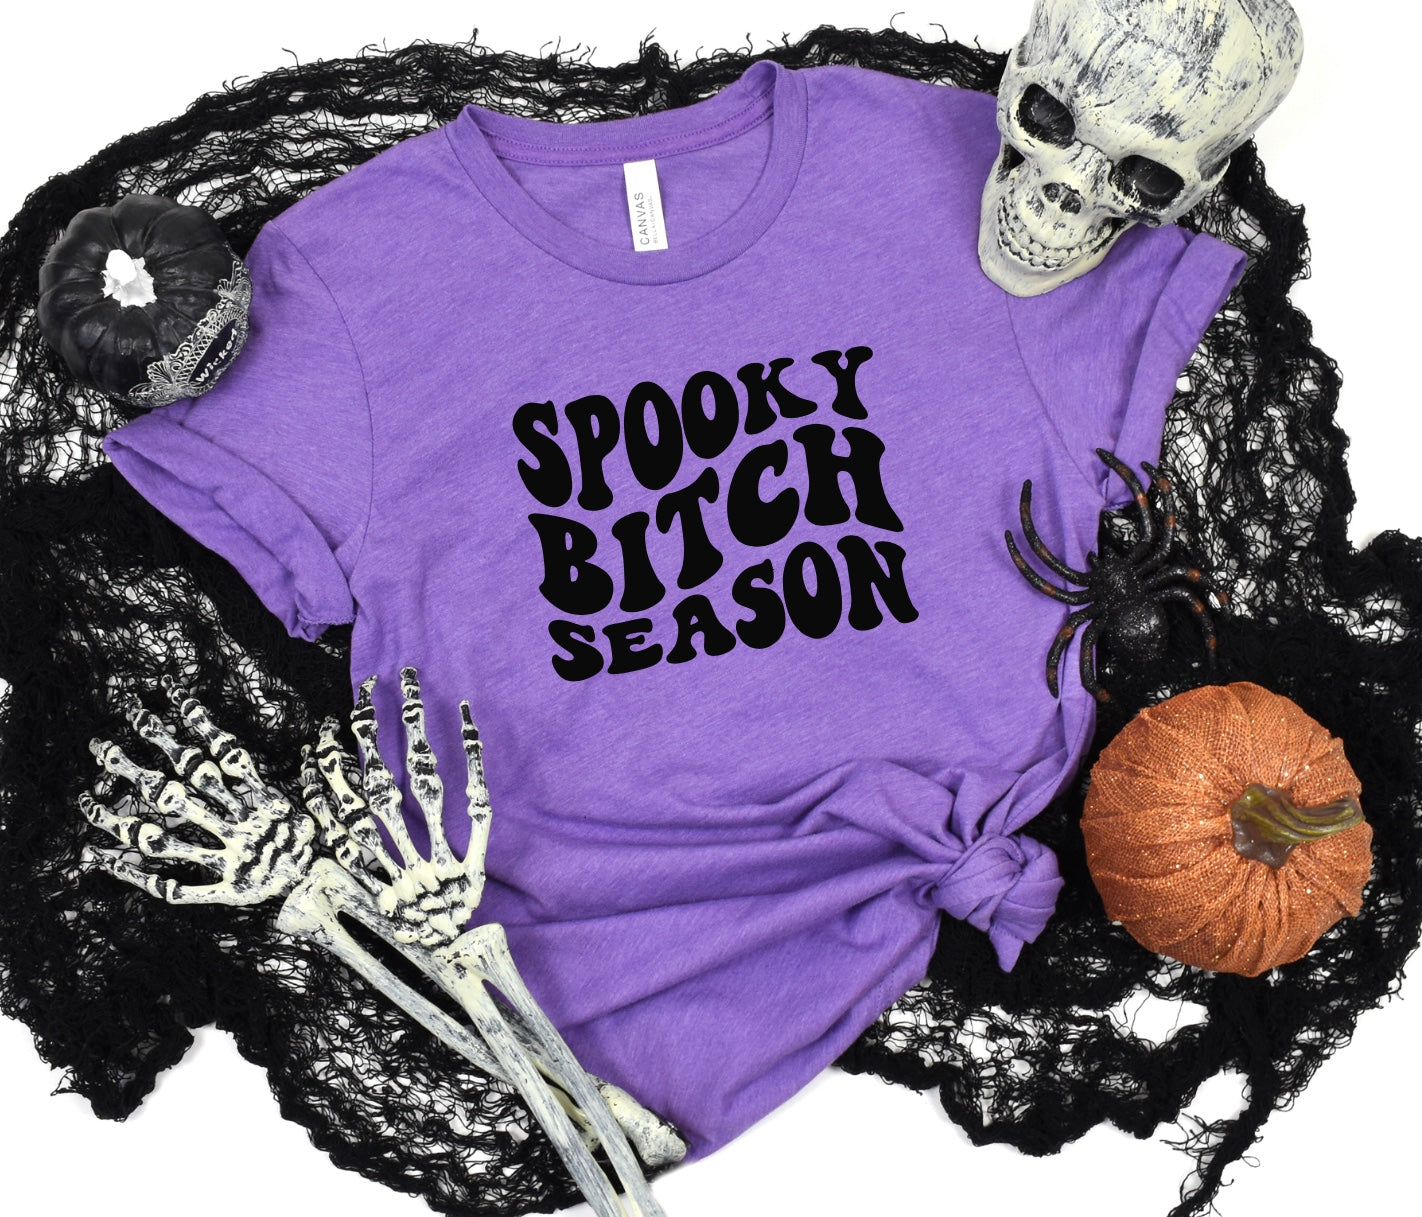 Spooky bitch season unisex t-shirt for women in heather purple